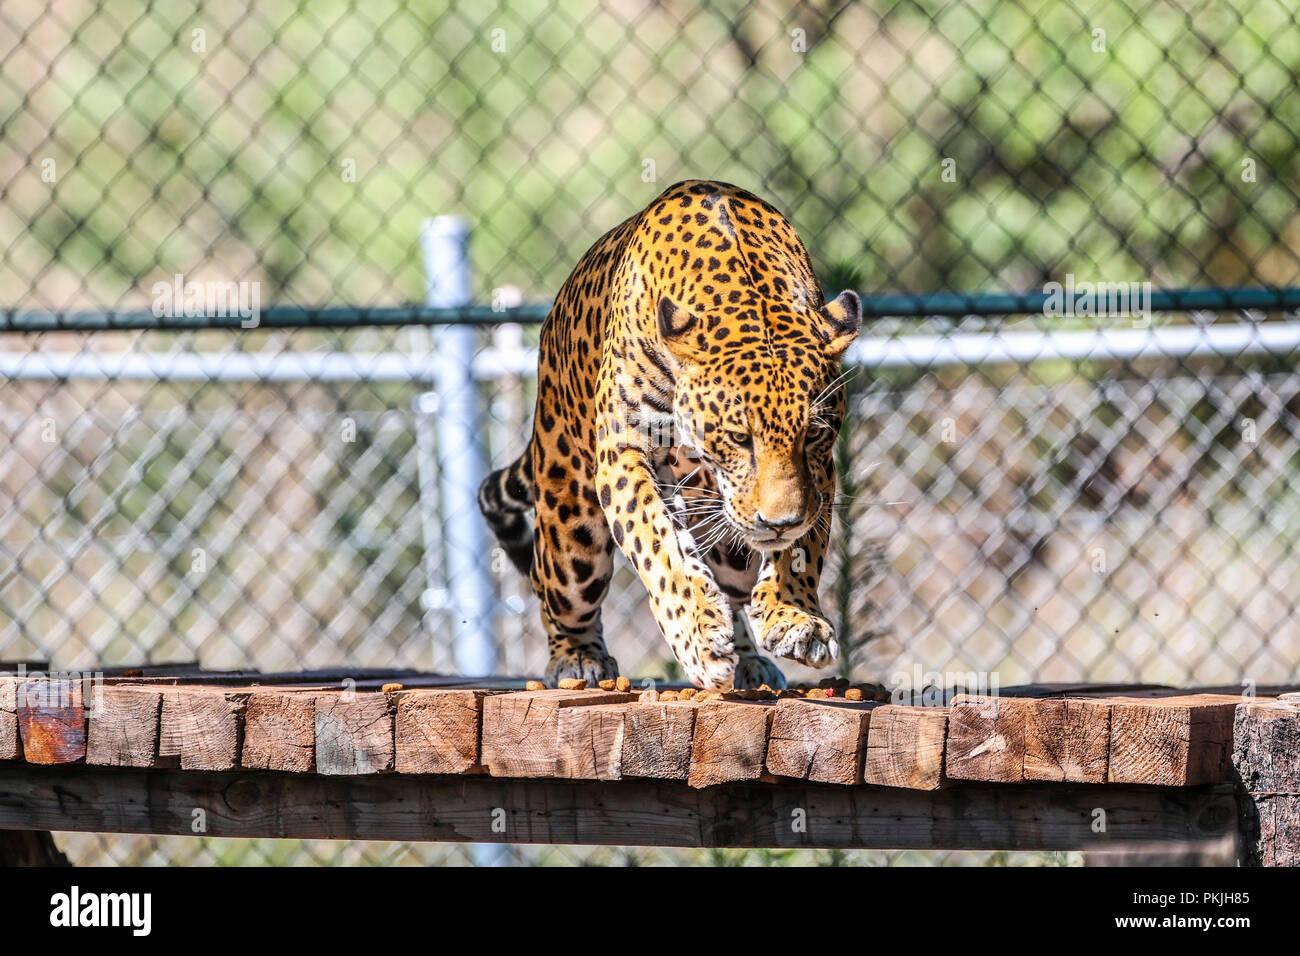 Jaguar in cattività, zoo. Felina, di mammifero, il gatto selvatico, carnivoro, predator, animale, cat Foto Stock